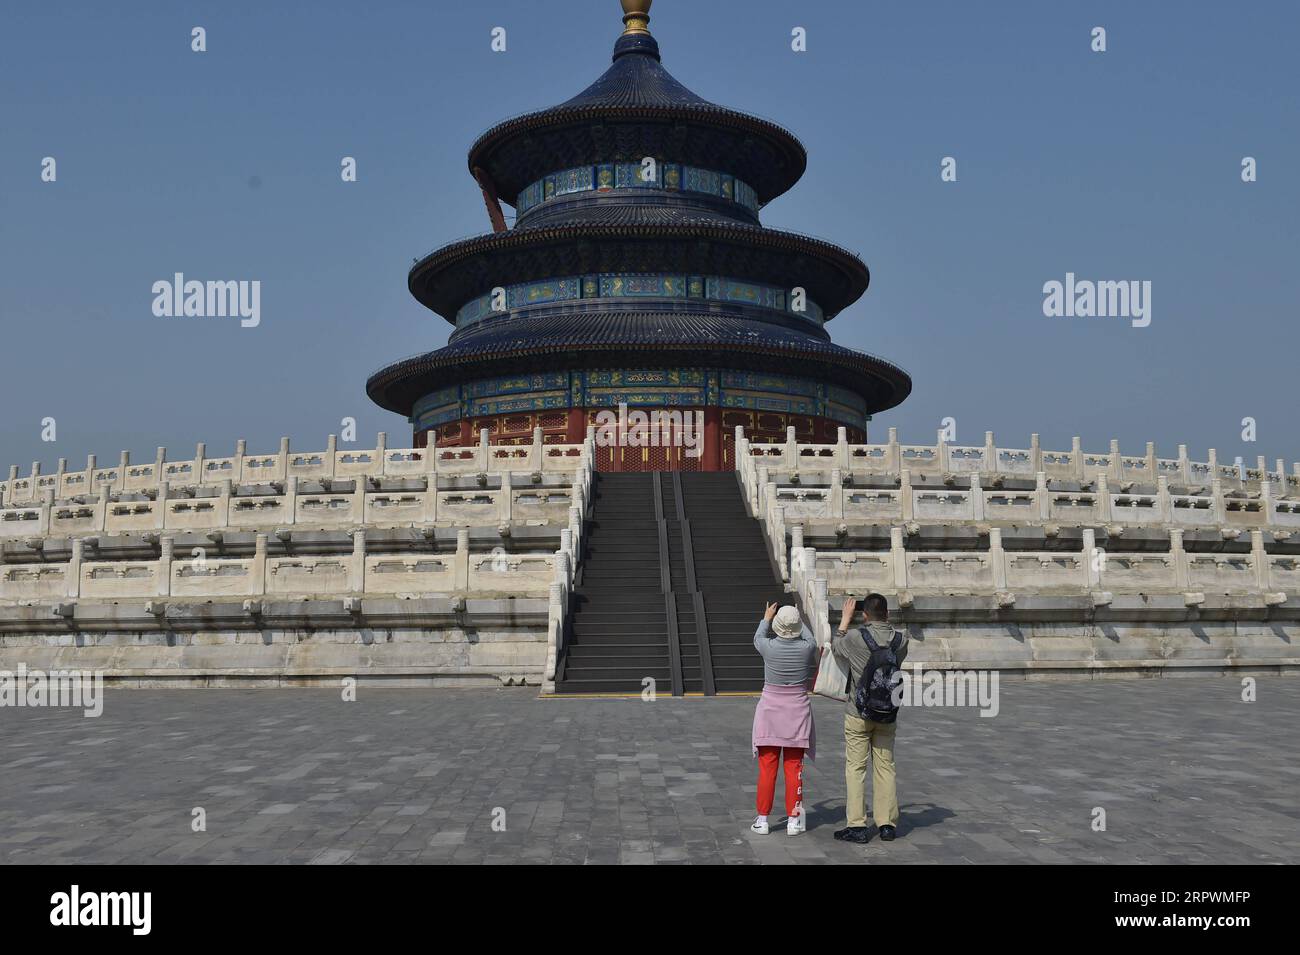 200429 -- PEKING, 29. April 2020 -- Touristen machen Fotos von der Halle des Gebets für gute Ernten im Himmelstempel in Peking, Hauptstadt von China, 29. April 2020. Der Himmelstempel, ein UNESCO-Weltkulturerbe, das aufgrund des COVID-19-Ausbruchs vorübergehend geschlossen ist, öffnete seine drei Hauptbaugruppen am Mittwoch wieder für die Öffentlichkeit. Das wiedereröffnete Gelände, nämlich die Halle des Gebets für die gute Ernte, das Kaiserliche Himmelsgewölbe und der kreisförmige Moundaltar, ist für eine begrenzte Anzahl von Besuchern per Online-Buchung zugänglich. CHINA-PEKING-COVID-19-TEMPEL DES HIMMELSTOURISMUS CN PENGXZIYANG PUBLICA Stockfoto